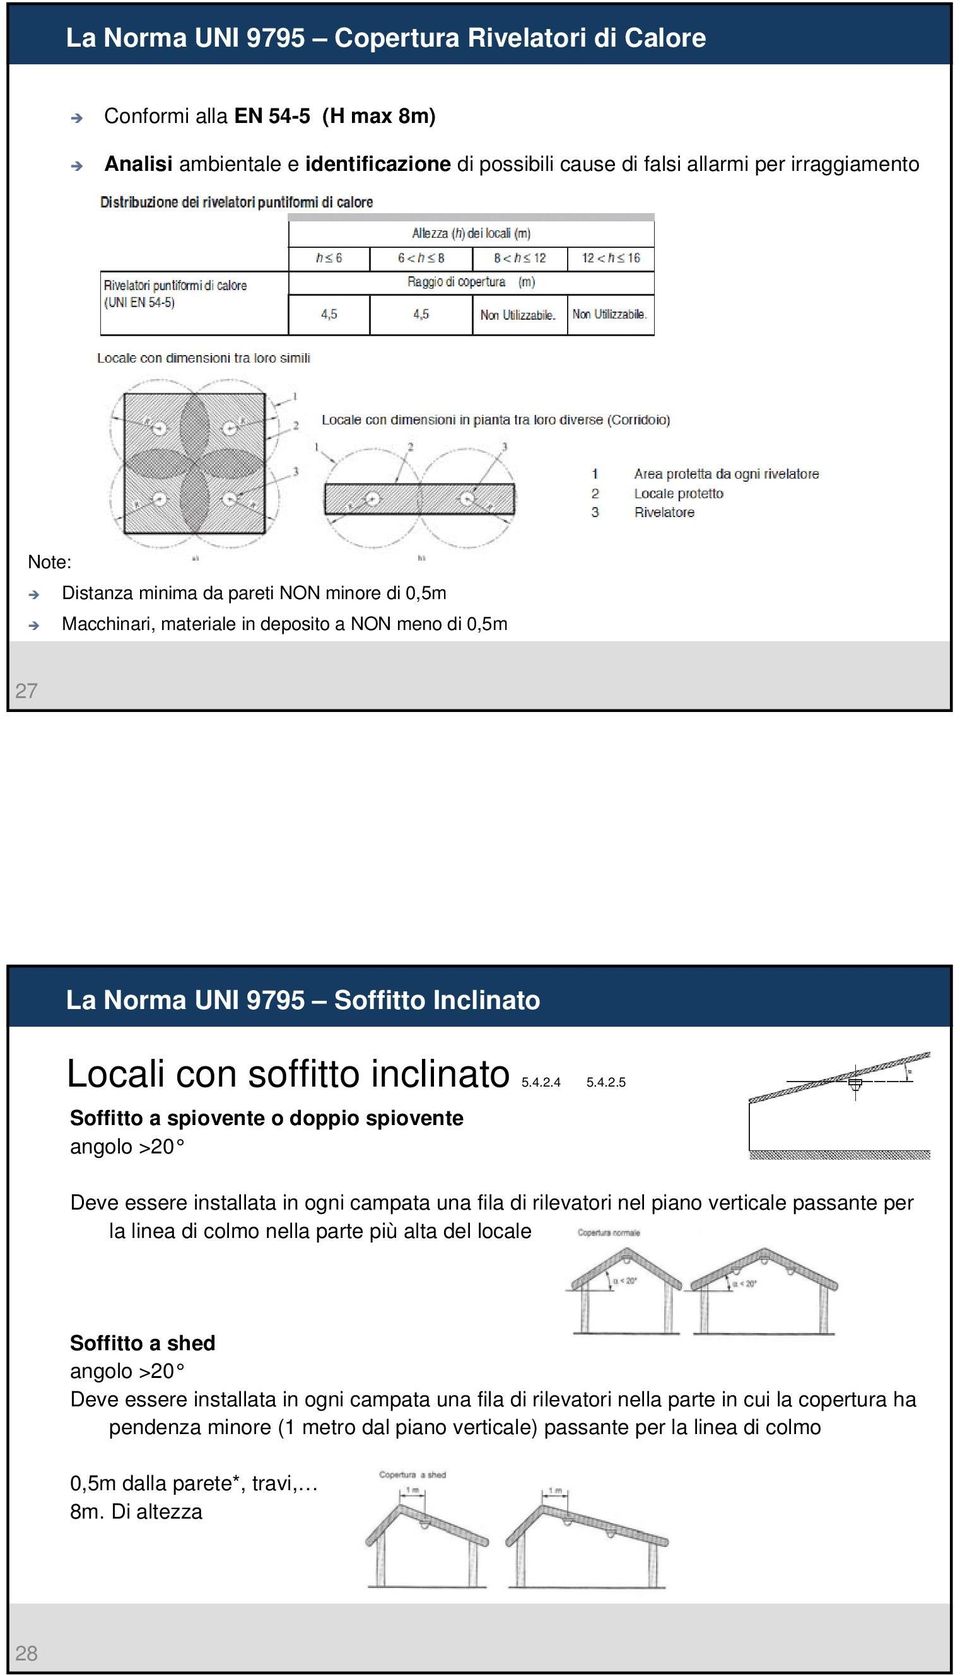 La Norma UNI 9795 Soffitto Inclinato Locali con soffitto inclinato 5.4.2.